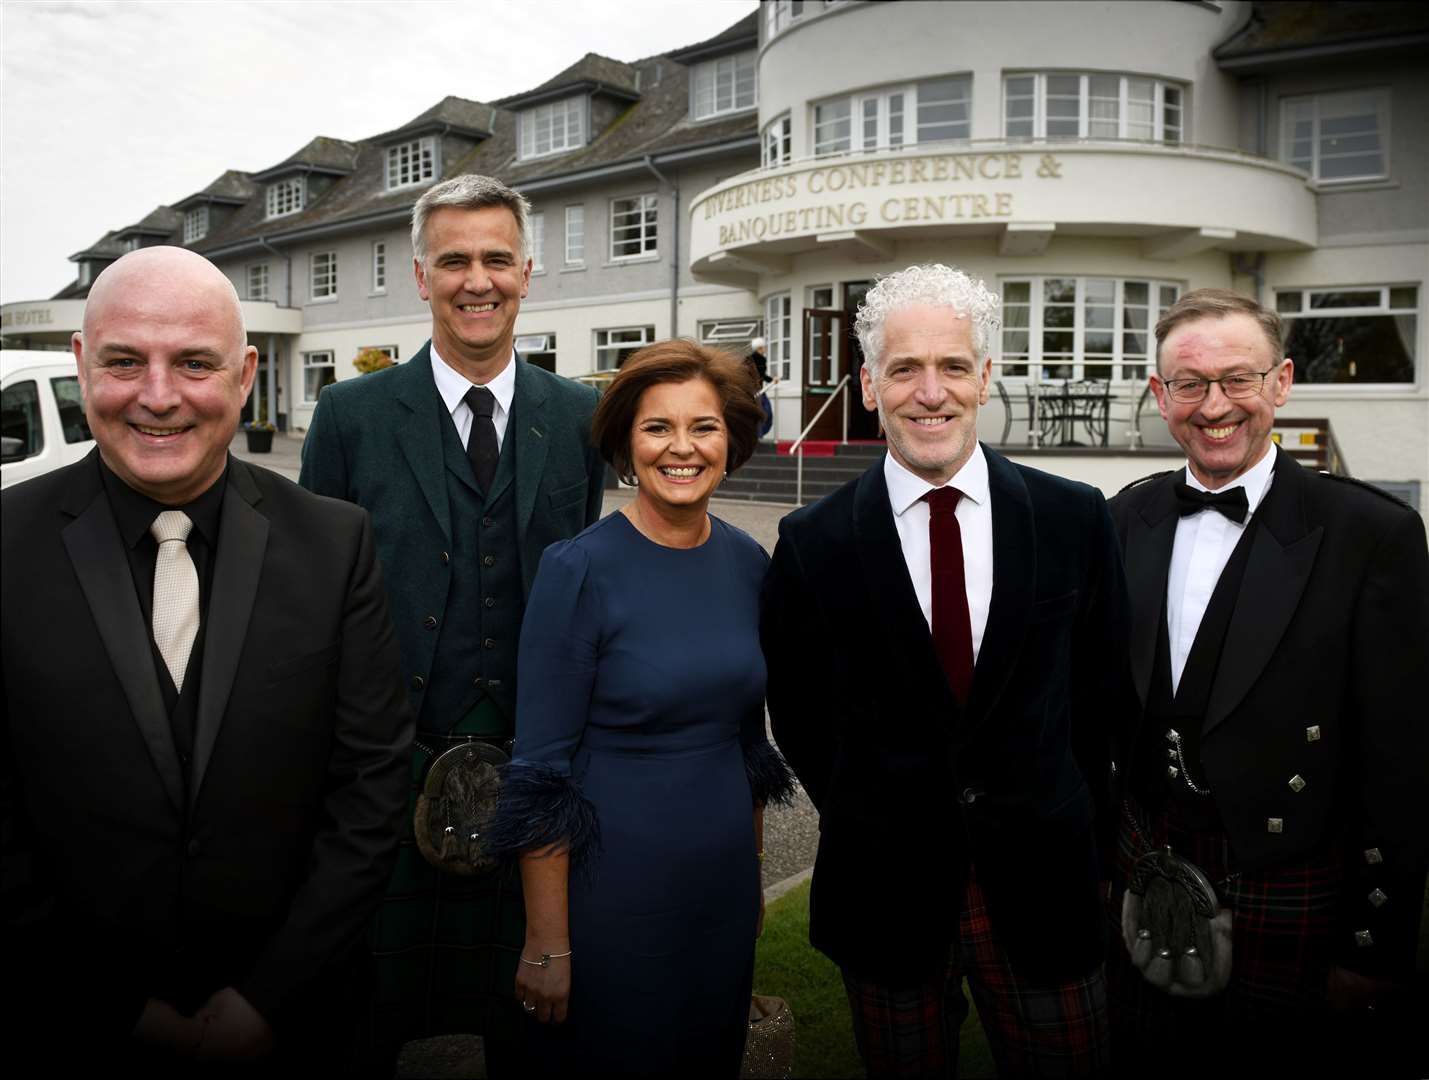 Liam Christie, Collin Marr, Eunice McAdam, Gordon Buchanan and Stewart Nicol. Picture: James Mackenzie.